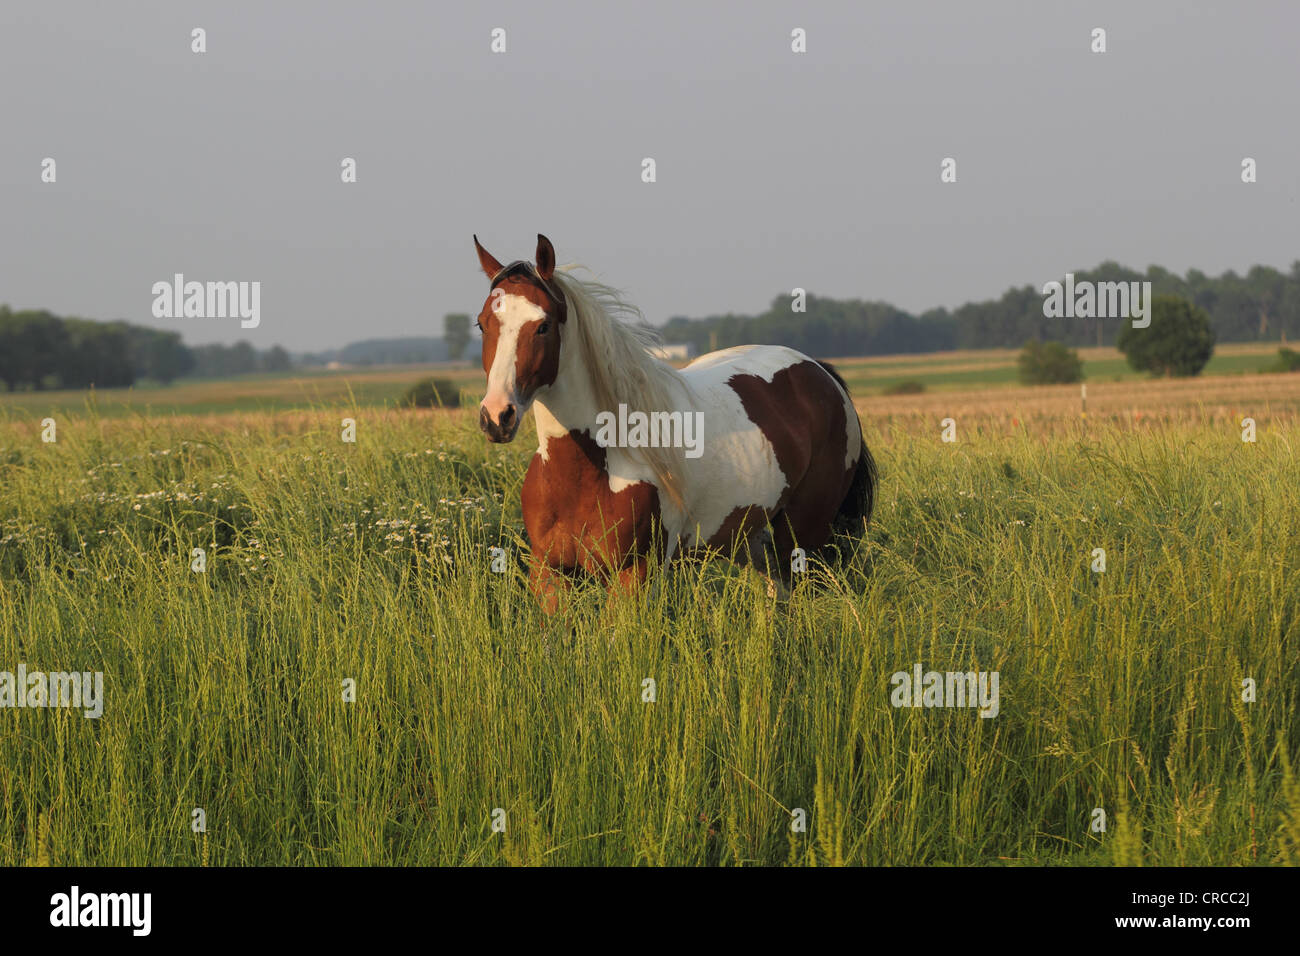 Paint horse Tobiano baie dans un champ avec de l'herbe haute Banque D'Images